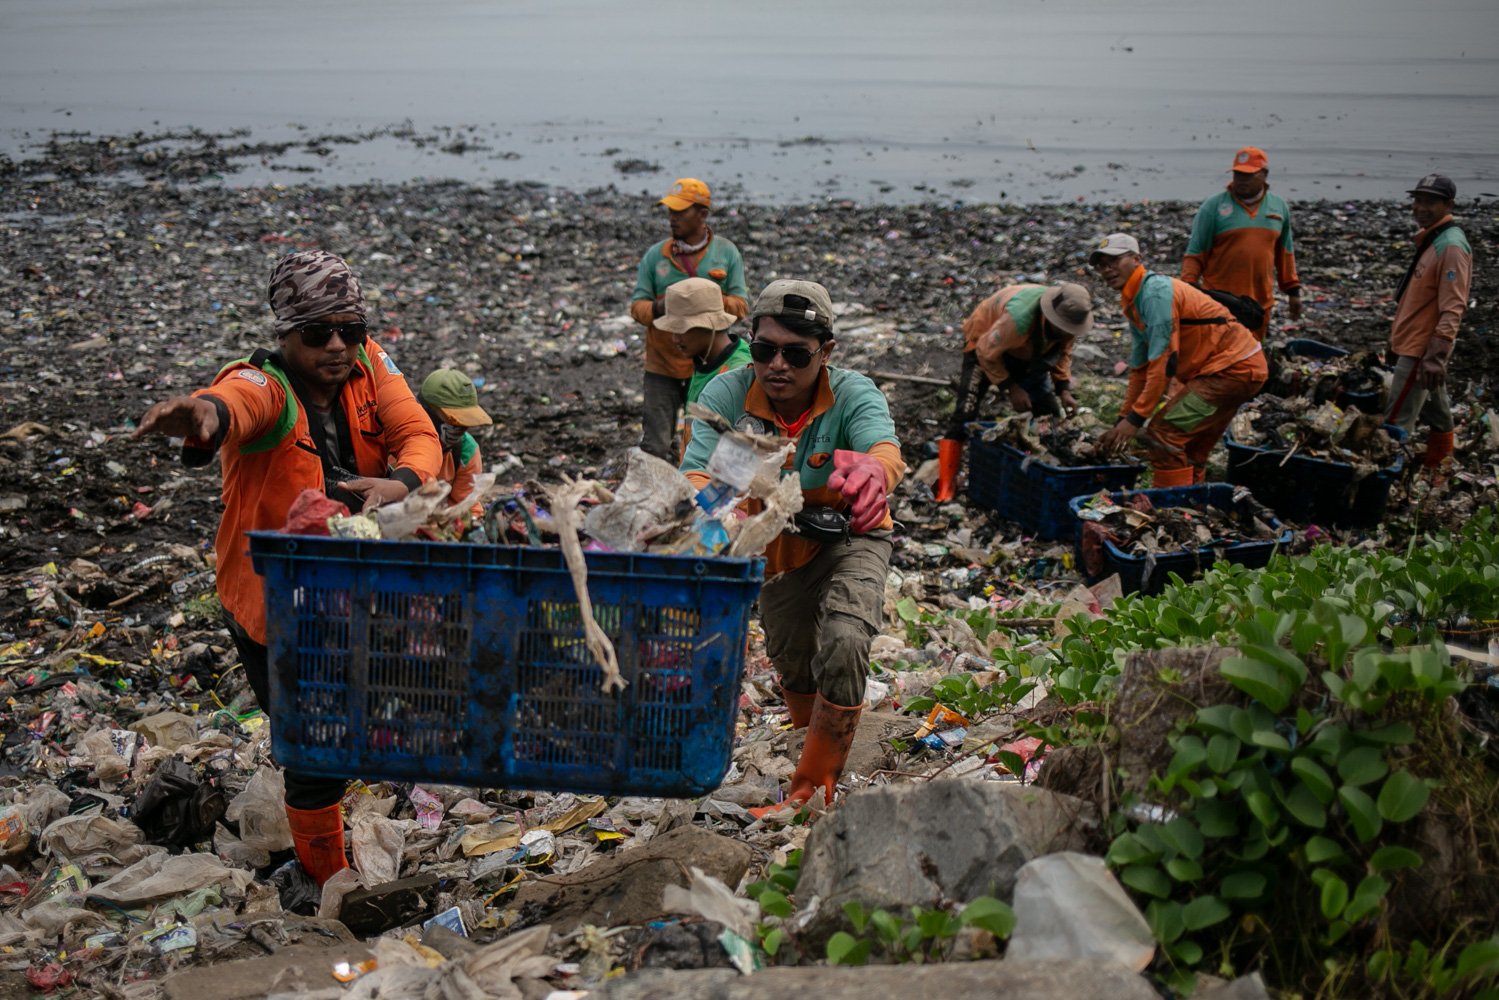 Petugas Penanganan Prasarana dan Sarana Umum (PPSU) mengumpulkan sampah di sekitar Pantai Marunda, Cilincing, Jakarta, Kamis (8/6). Dalam peringatan Hari Laut Internasional kondisi laut Jakarta masih dipenuhi sampah. Menurut KLHK Indonesia menghasilkan lebih dari 19 juta ton sampah sepanjang 2022, 18 persennya sampah plastik yang sebagian ngalir ke laut.